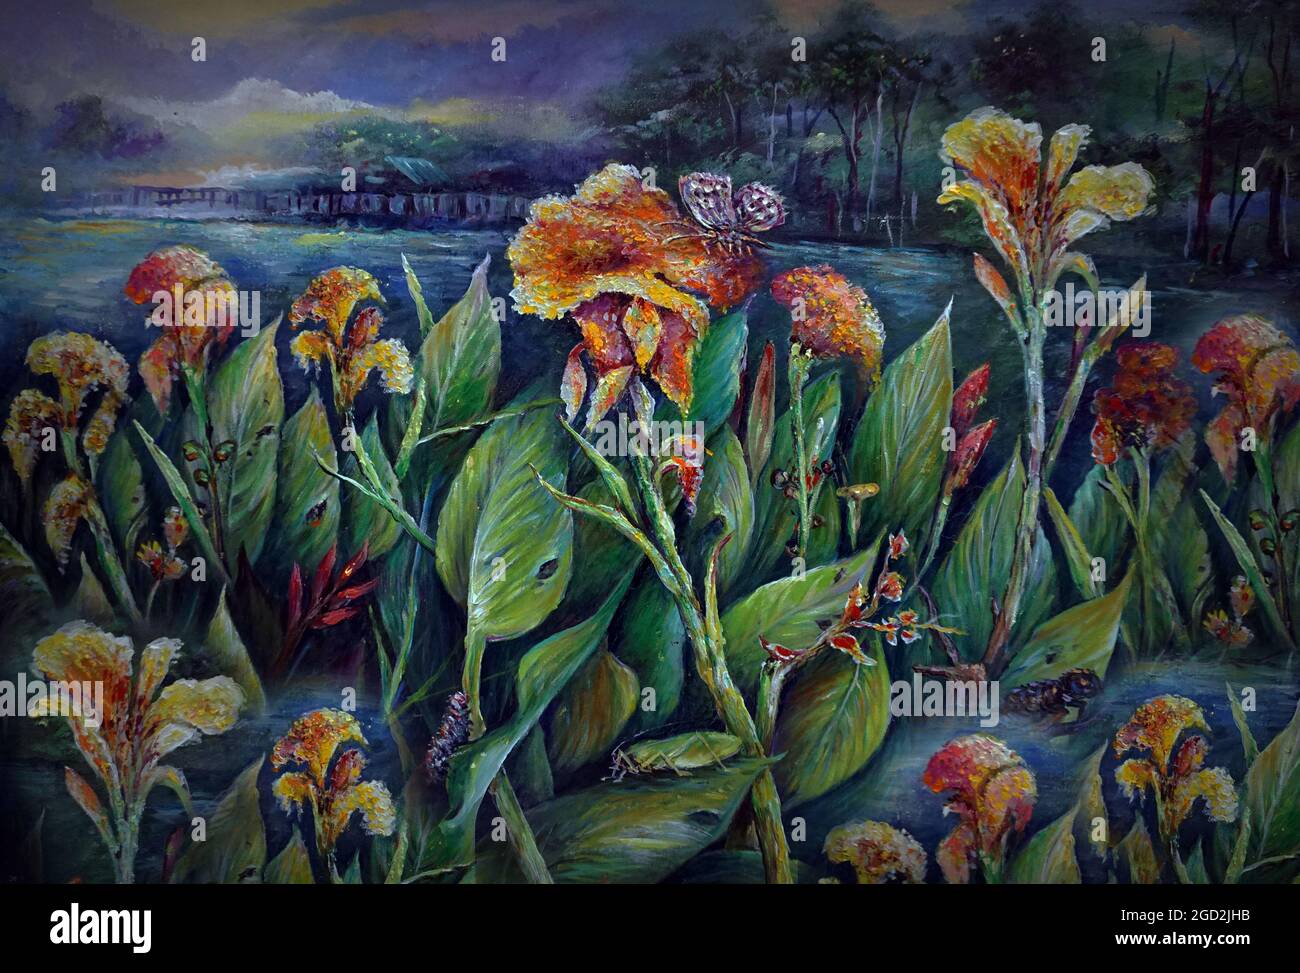 Peinture d'art abstrait fleur acrylique nature imagination Banque D'Images